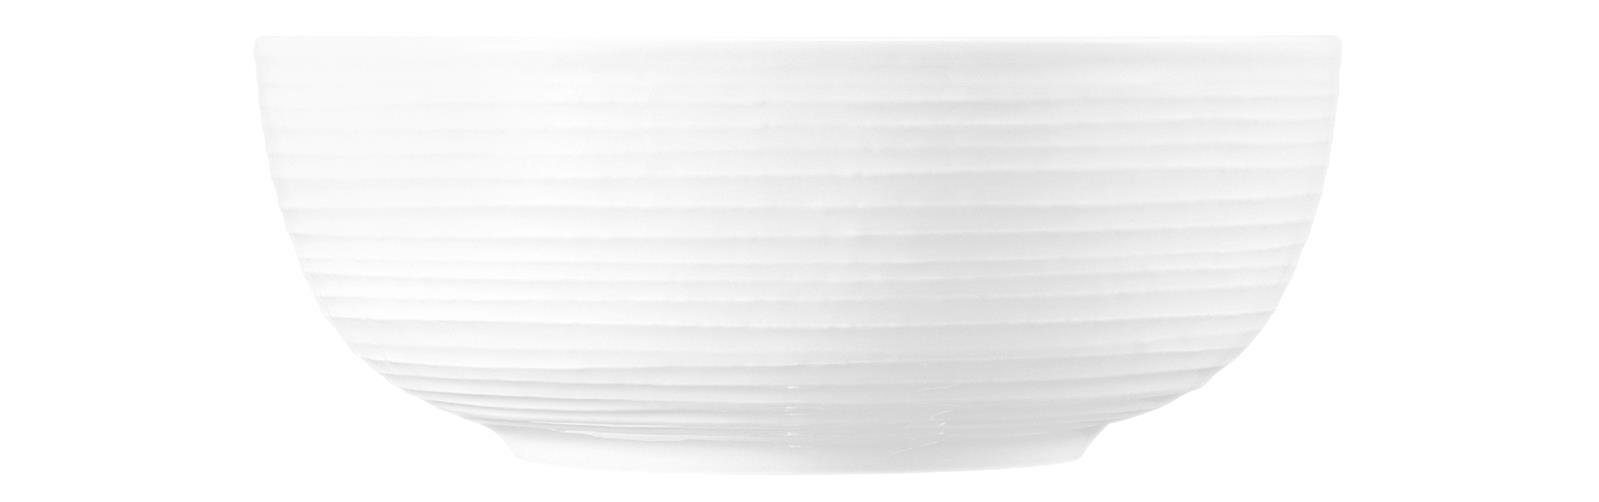 Seltmann Weiden Schüssel Terra weiß Foodbowls 20 cm, Porzellan, (1 Foodbowl) | Schüsseln